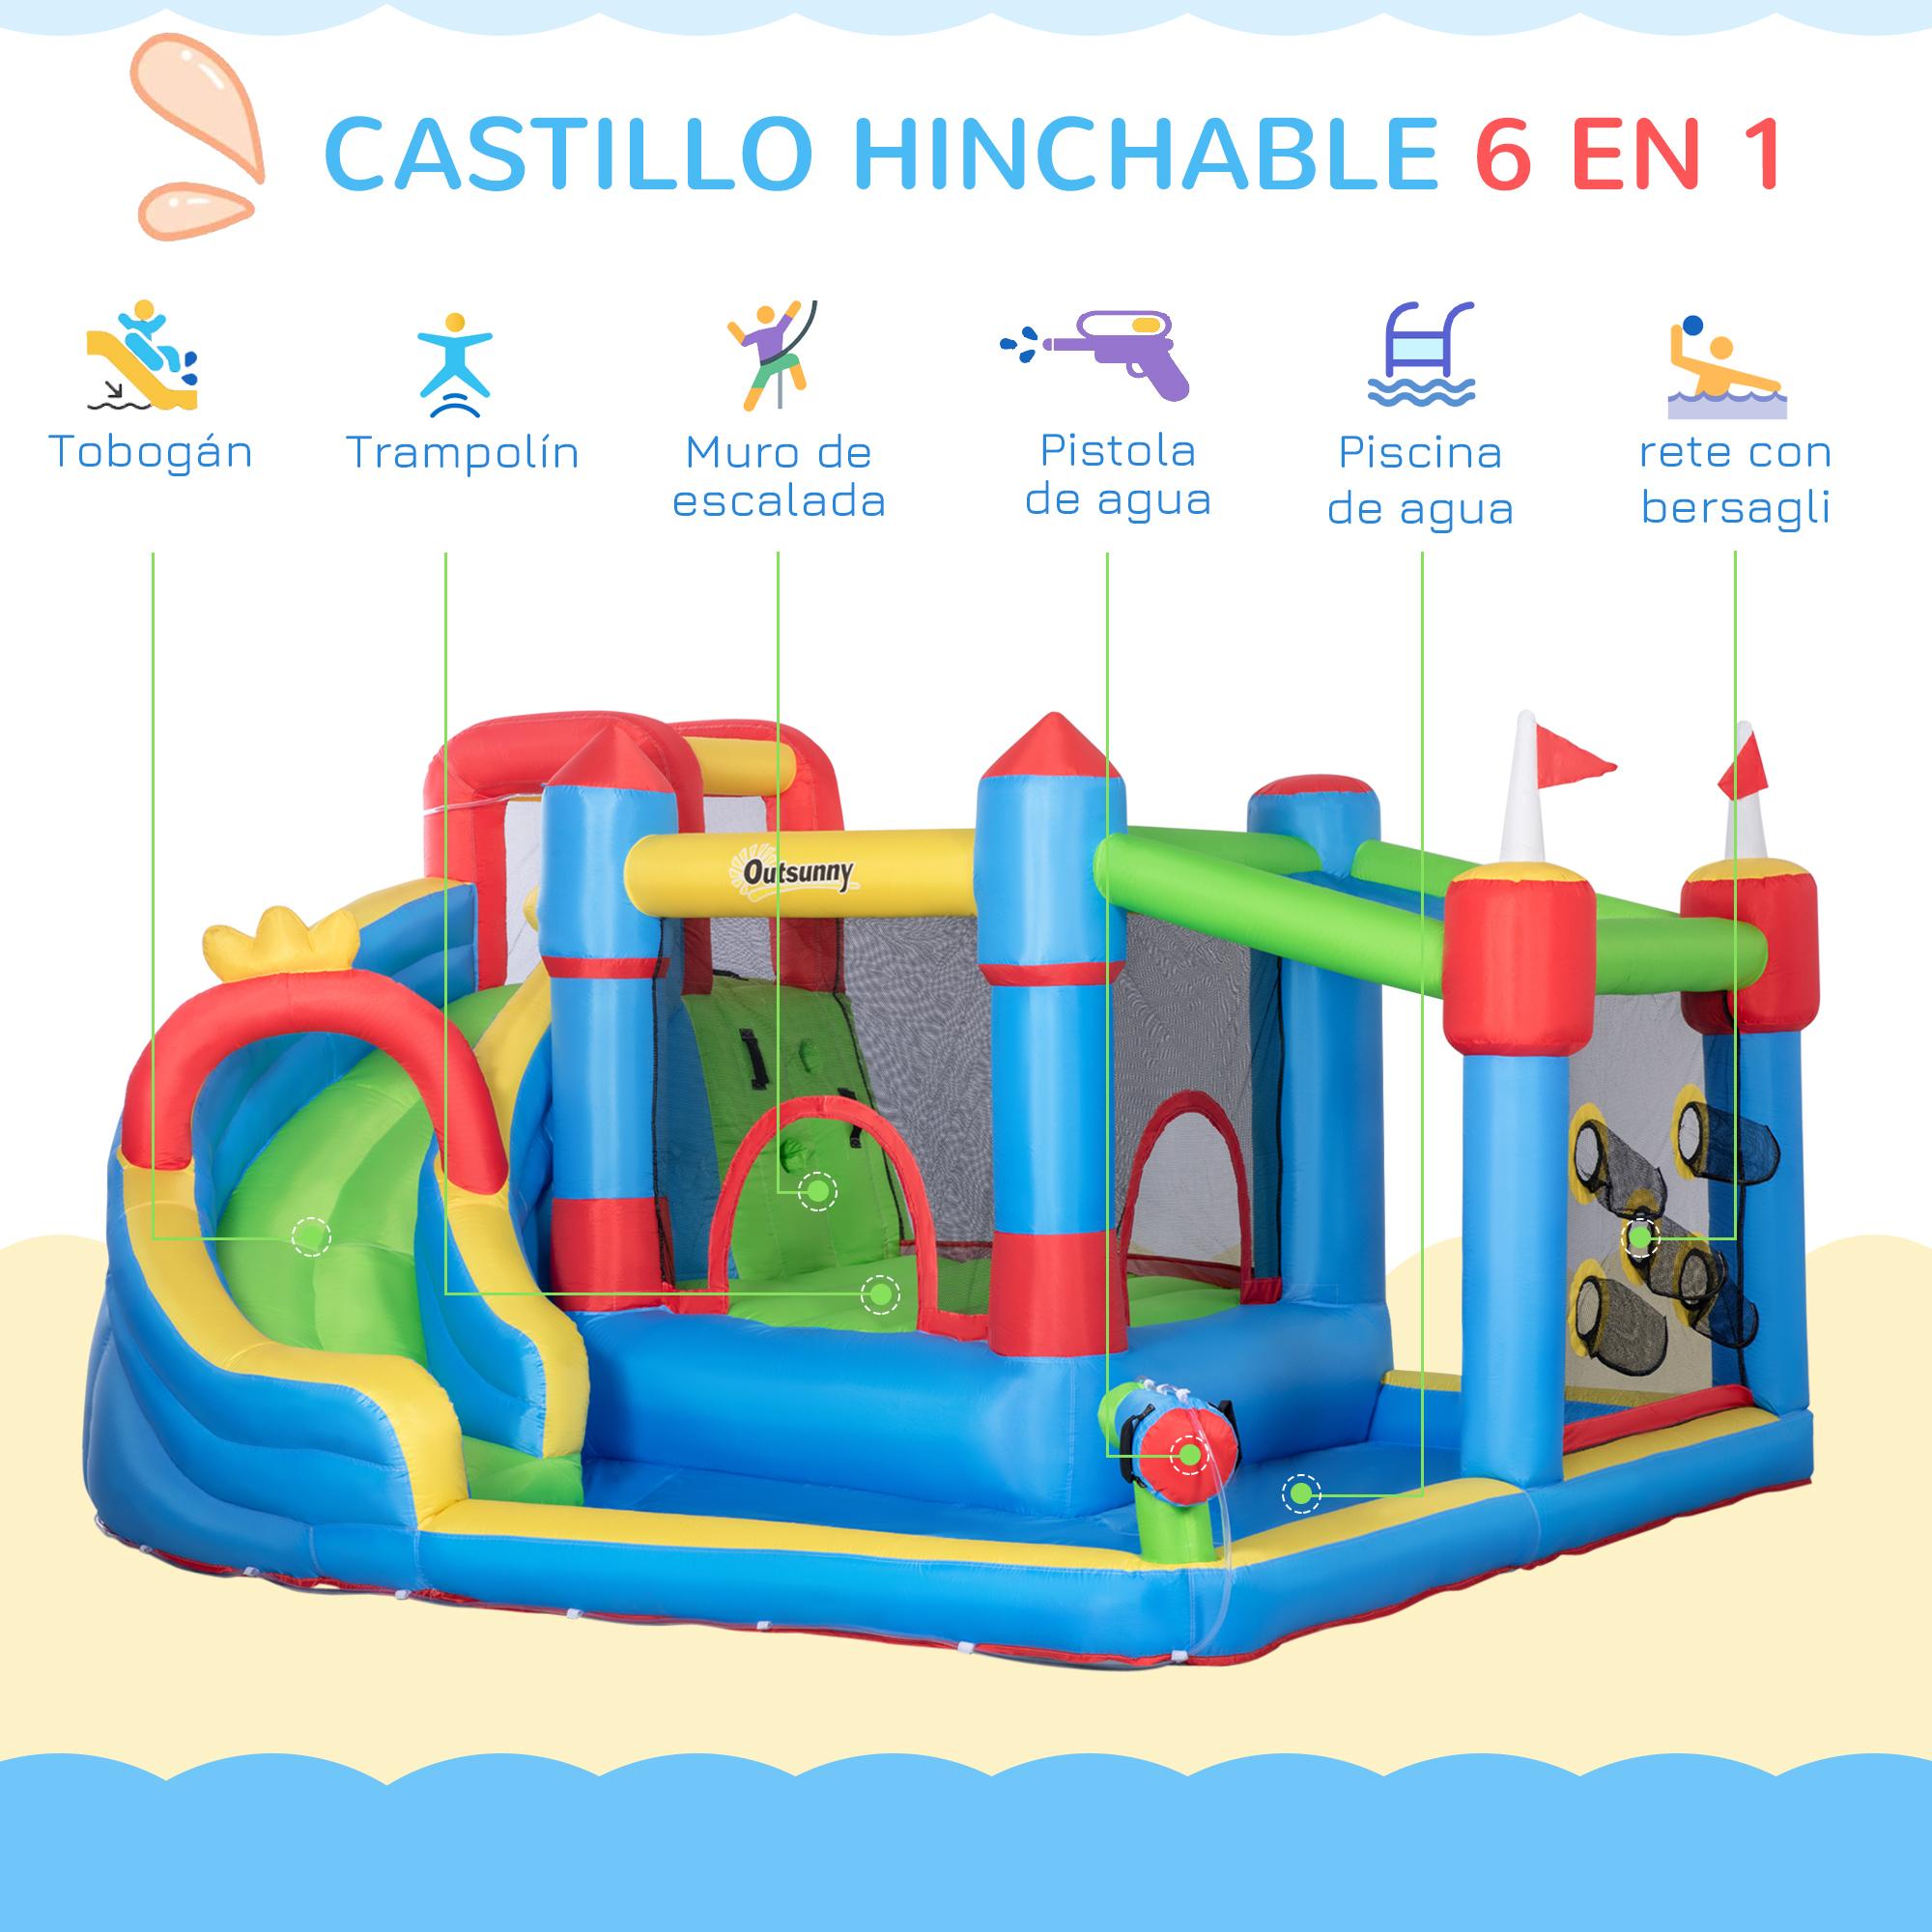 Castillo Hinchable Infantil con Tobogán Castillo Hinchable para Niños 3-8 Años con Cama de Salto Piscina Inflador y Bolsa de Transporte 390x300x197 cm Multicolor